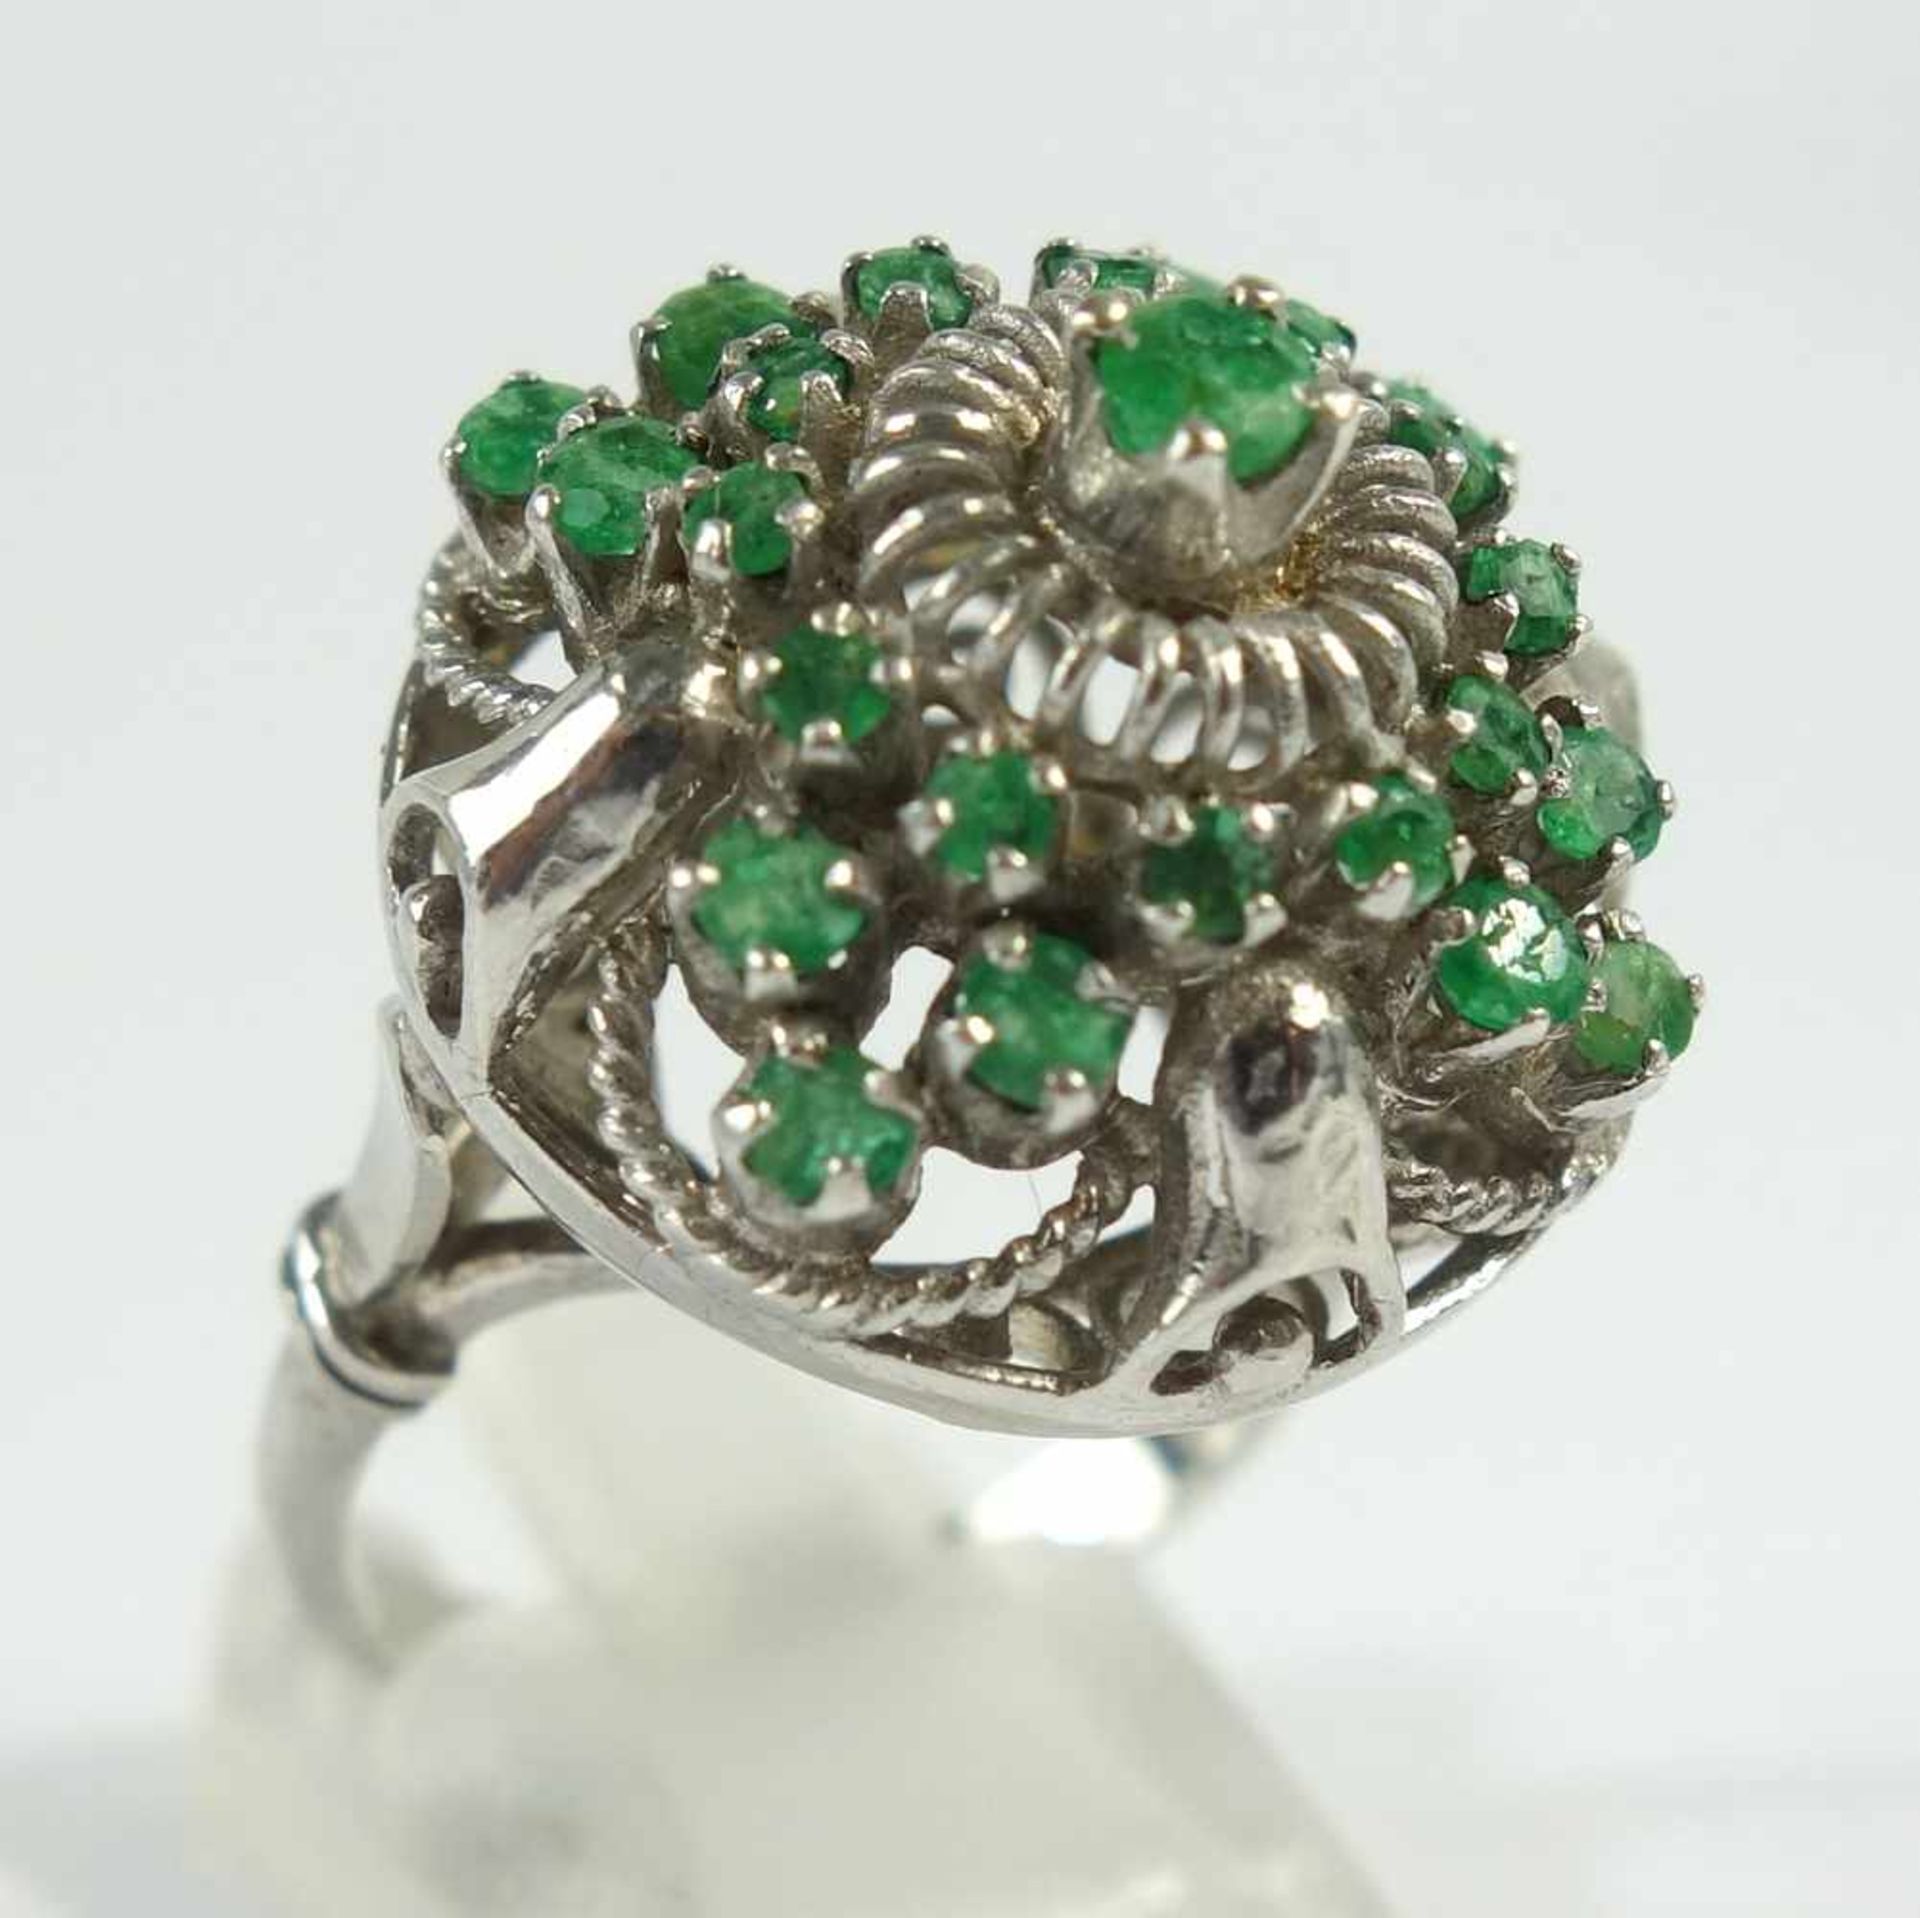 Smaragd- Ring, 925er Silber, Gew.7,34g, 25 rd., facettierte, kl.Smaragde in filigran